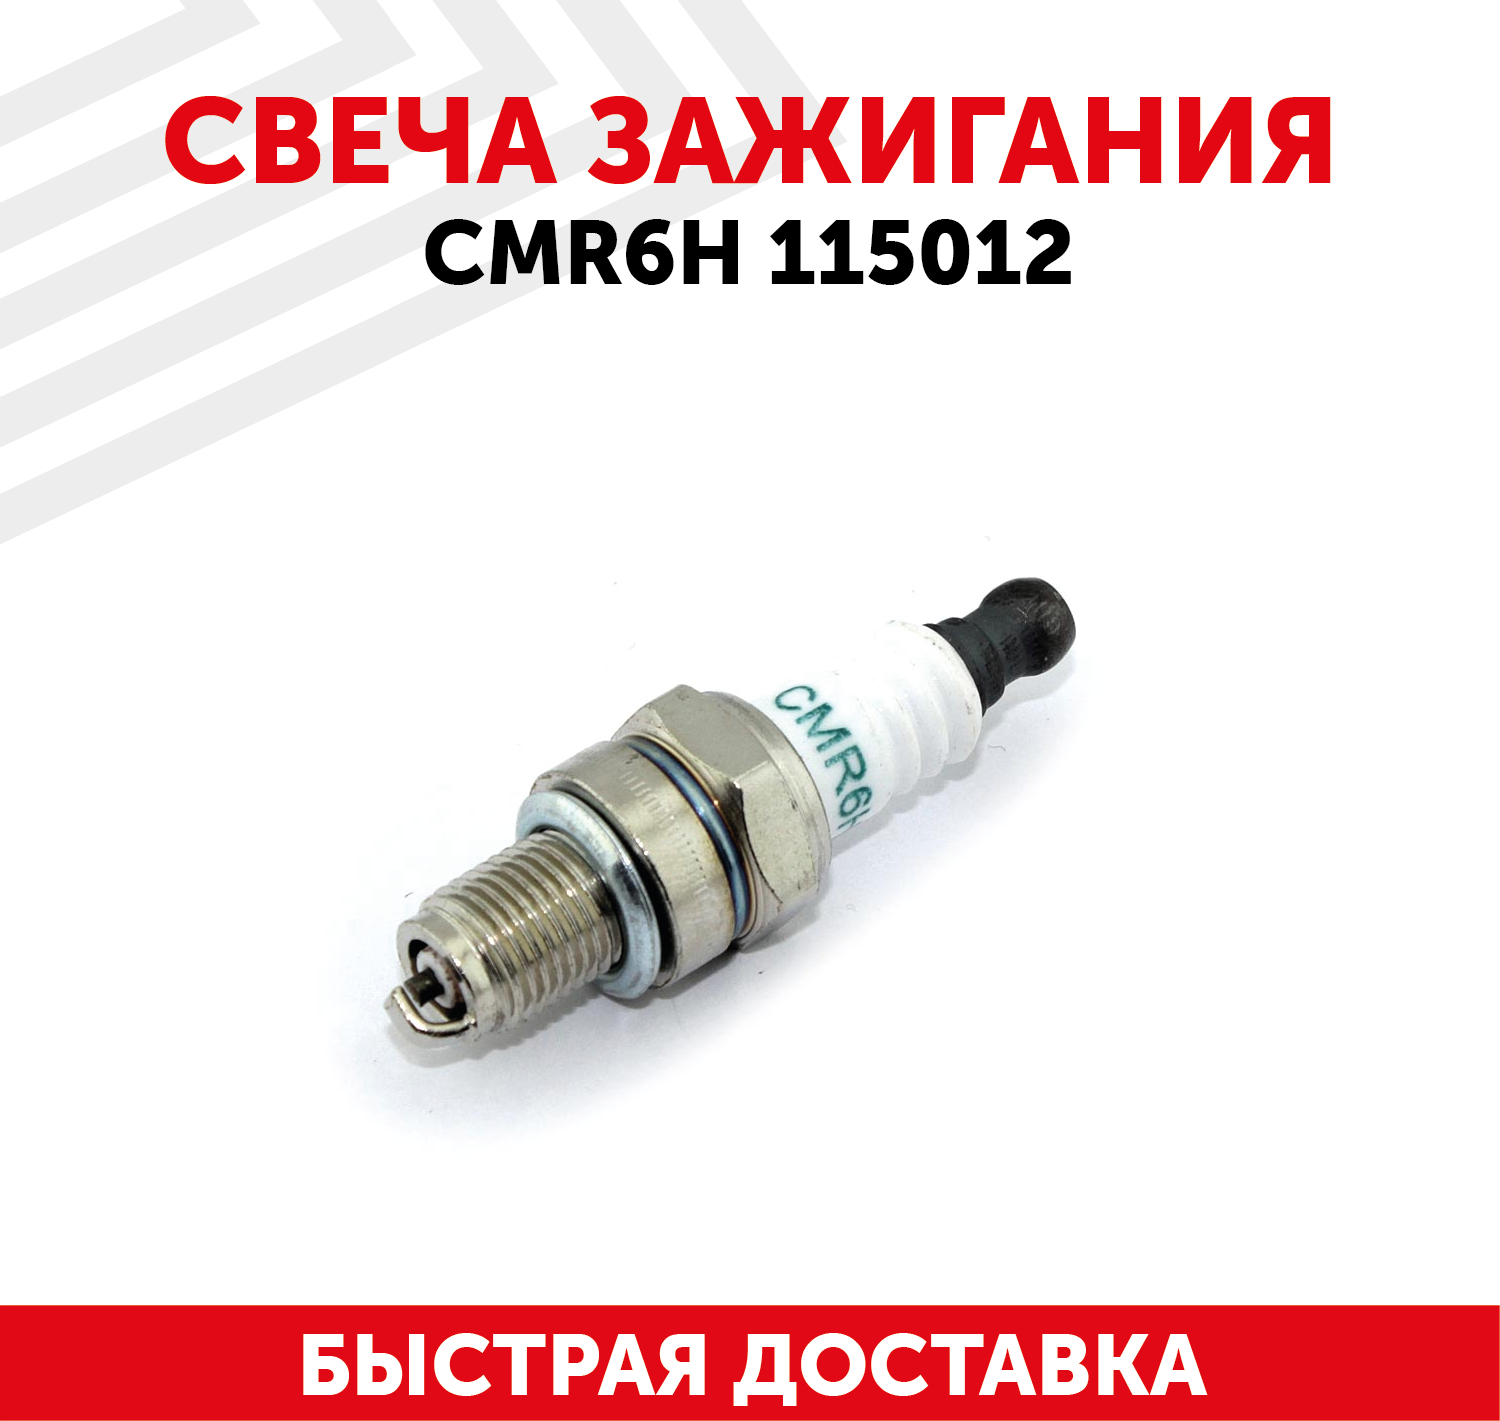 Свеча зажигания для двигателей CMR6H, 115012